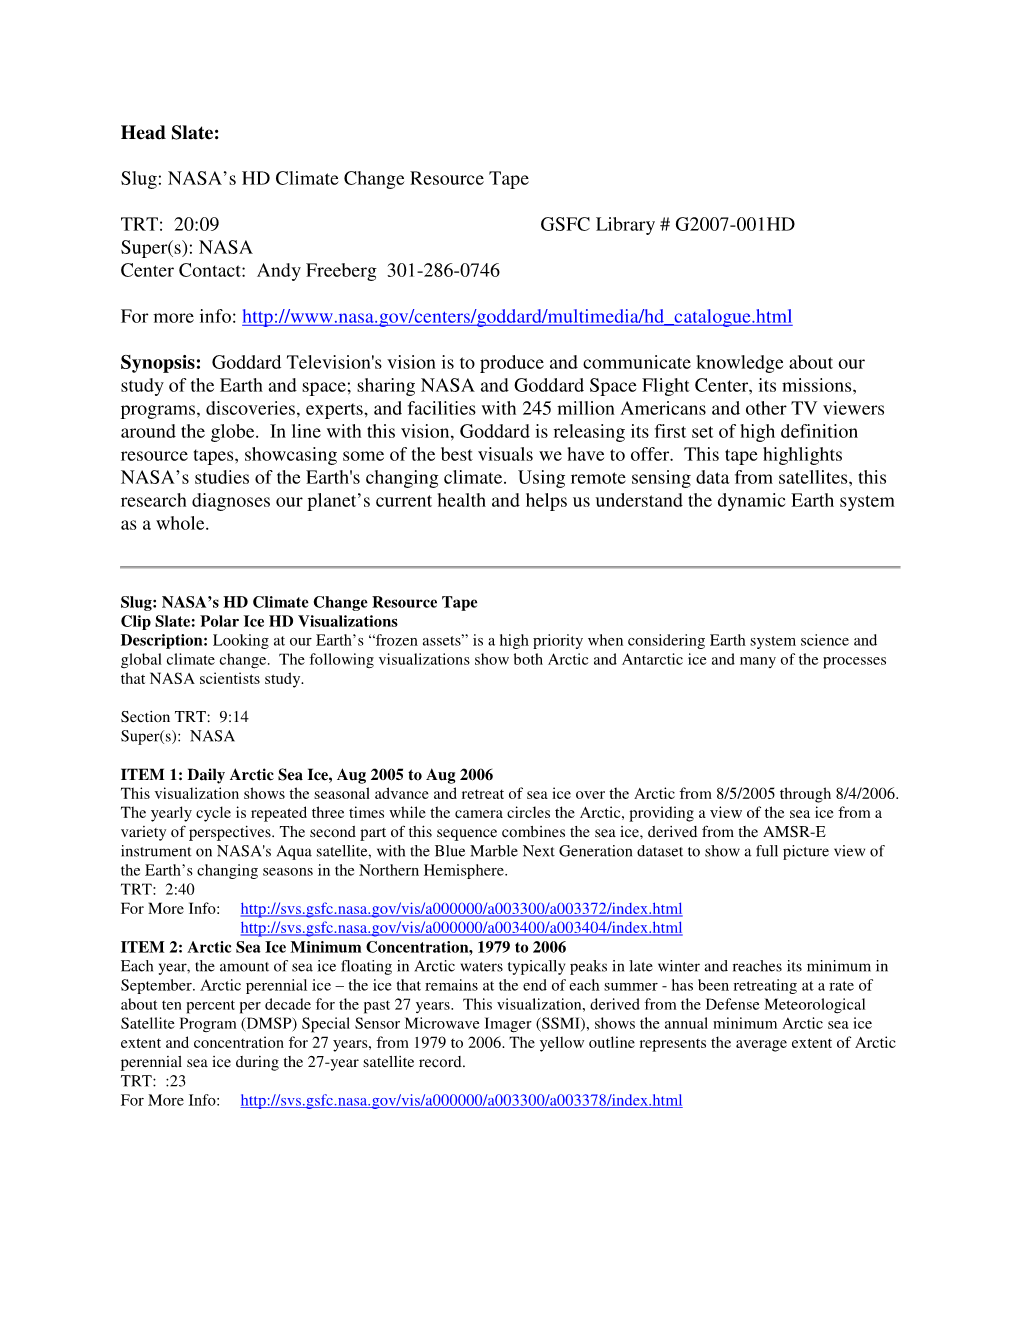 Head Slate: Slug: NASA's HD Climate Change Resource Tape